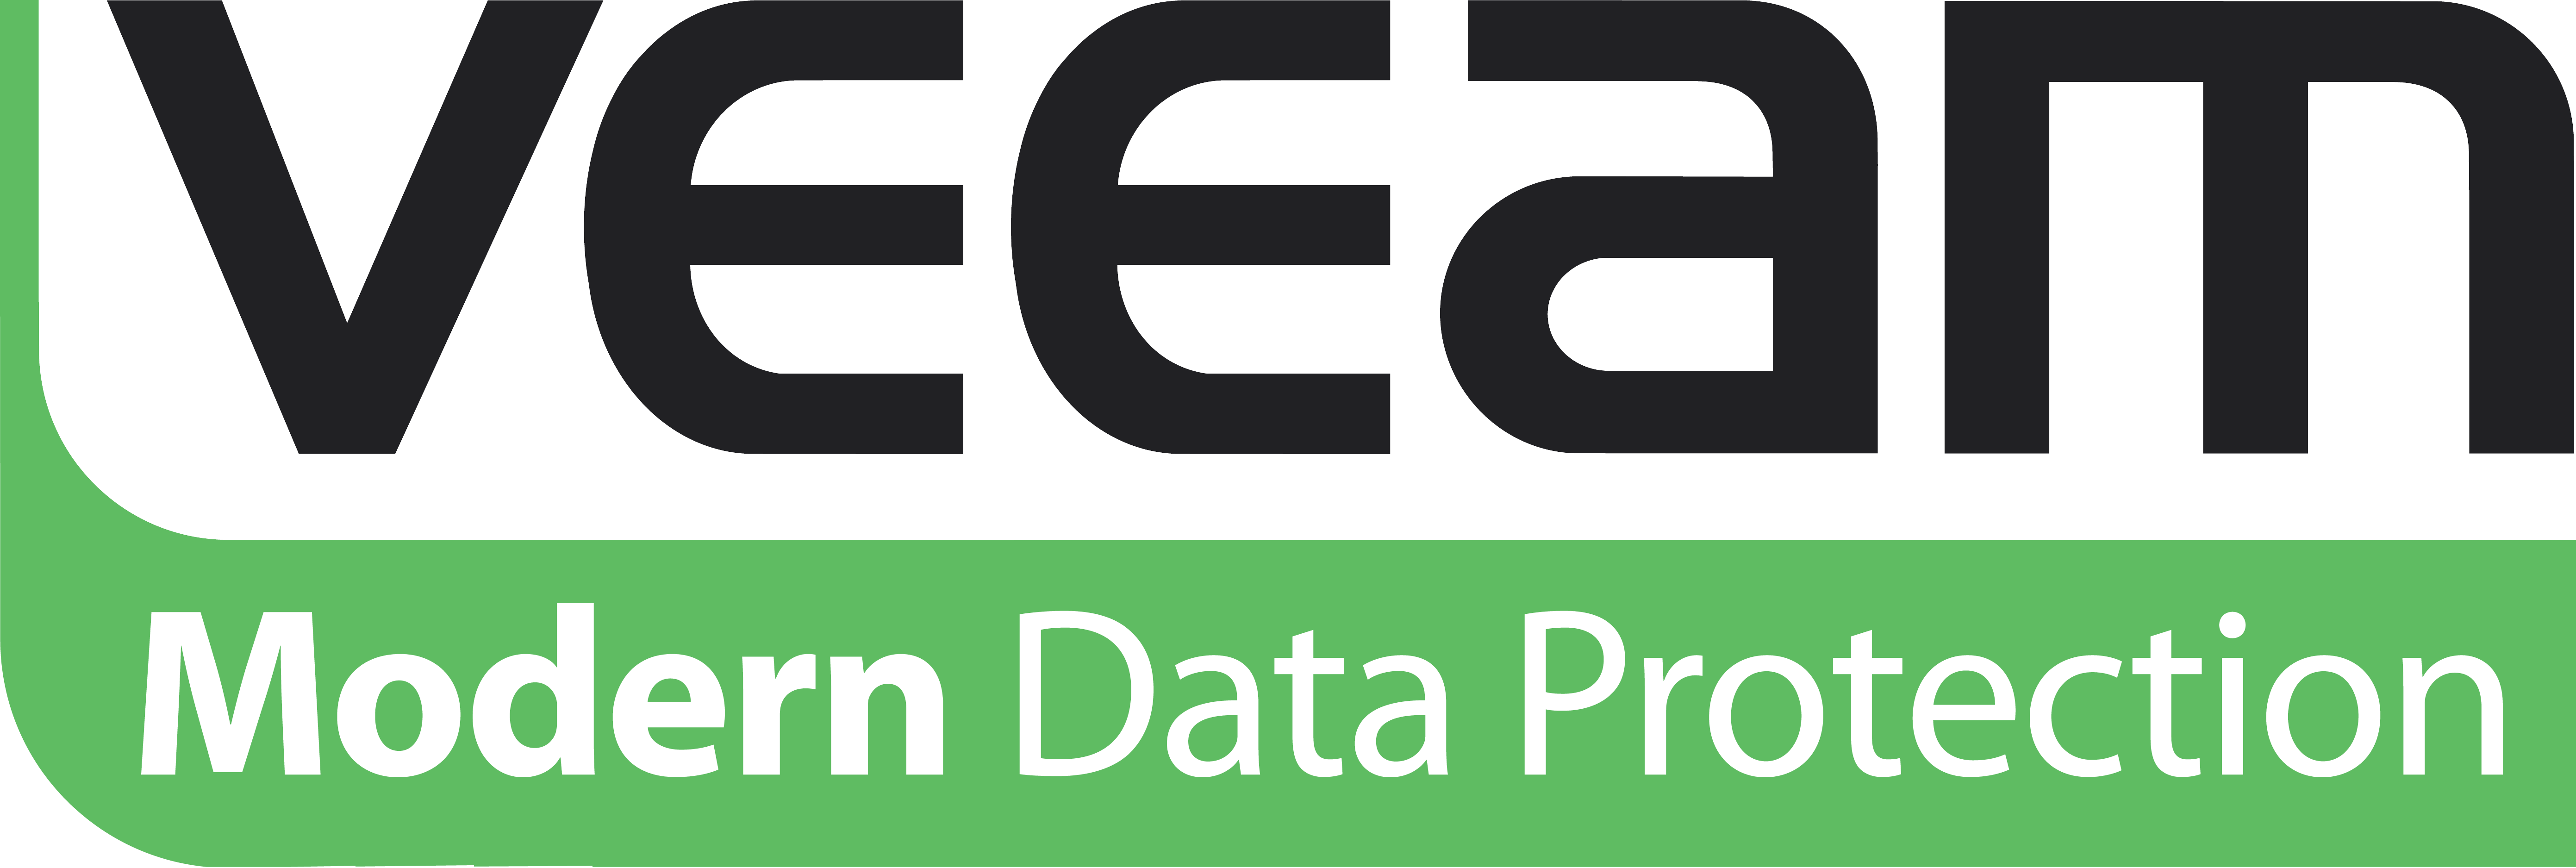 Veeam Modern Data Protection